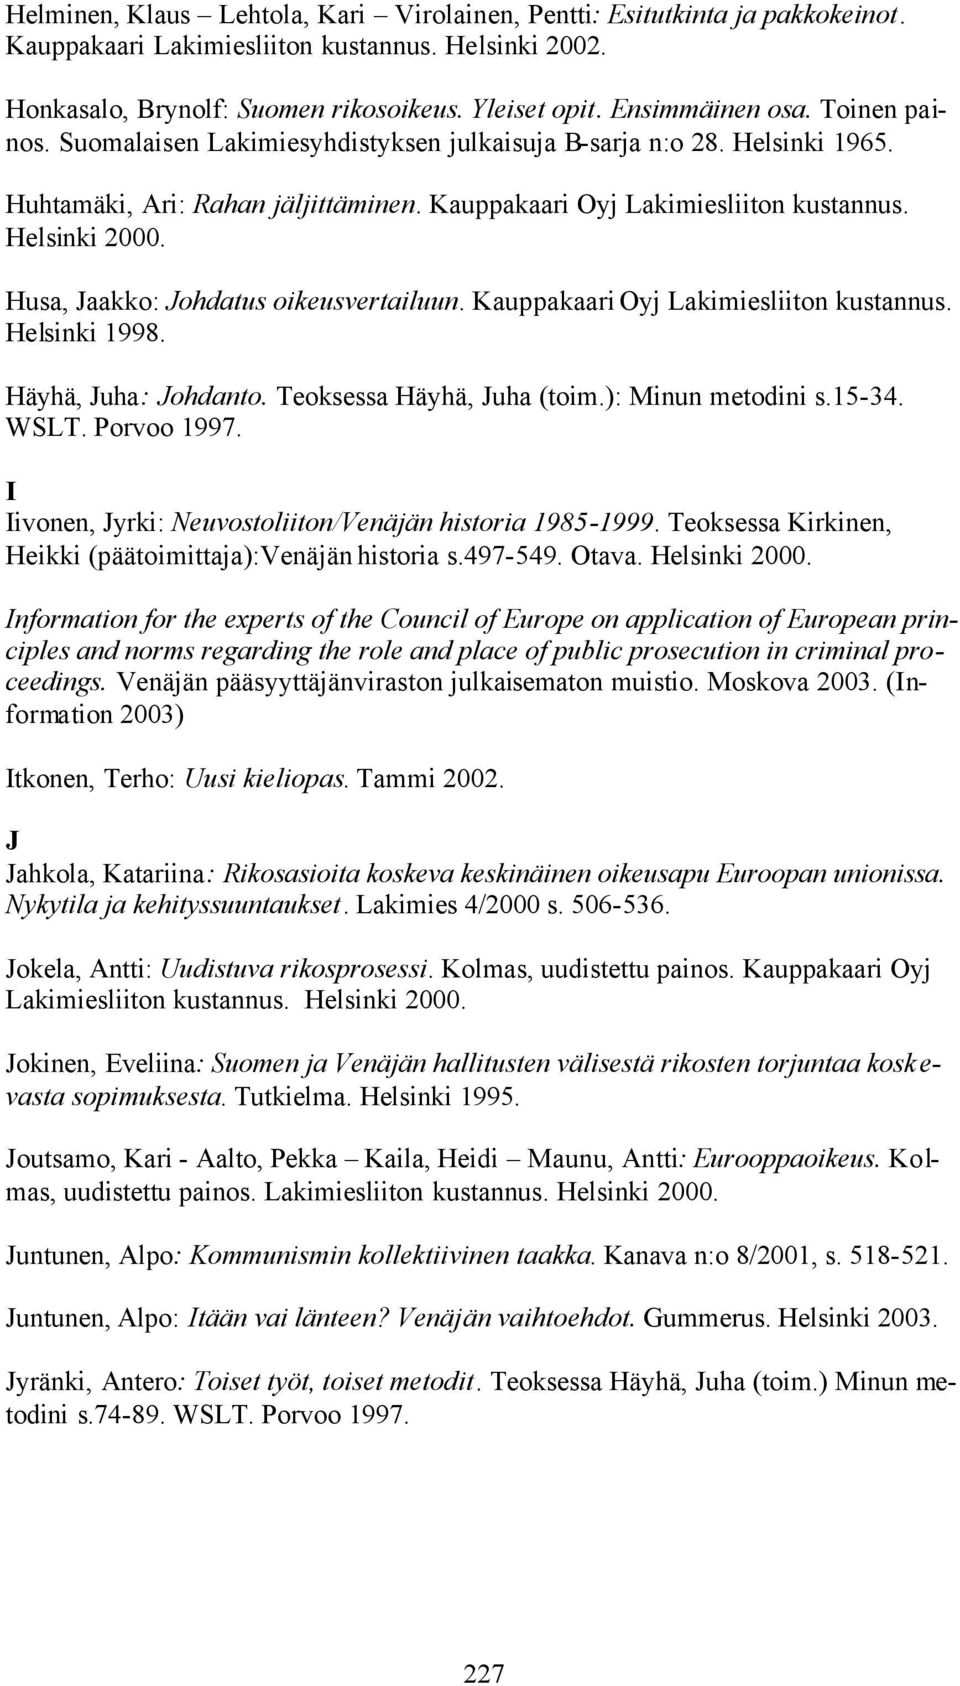 Husa, Jaakko: Johdatus oikeusvertailuun. Kauppakaari Oyj Lakimiesliiton kustannus. Helsinki 1998. Häyhä, Juha: Johdanto. Teoksessa Häyhä, Juha (toim.): Minun metodini s.15-34. WSLT. Porvoo 1997.